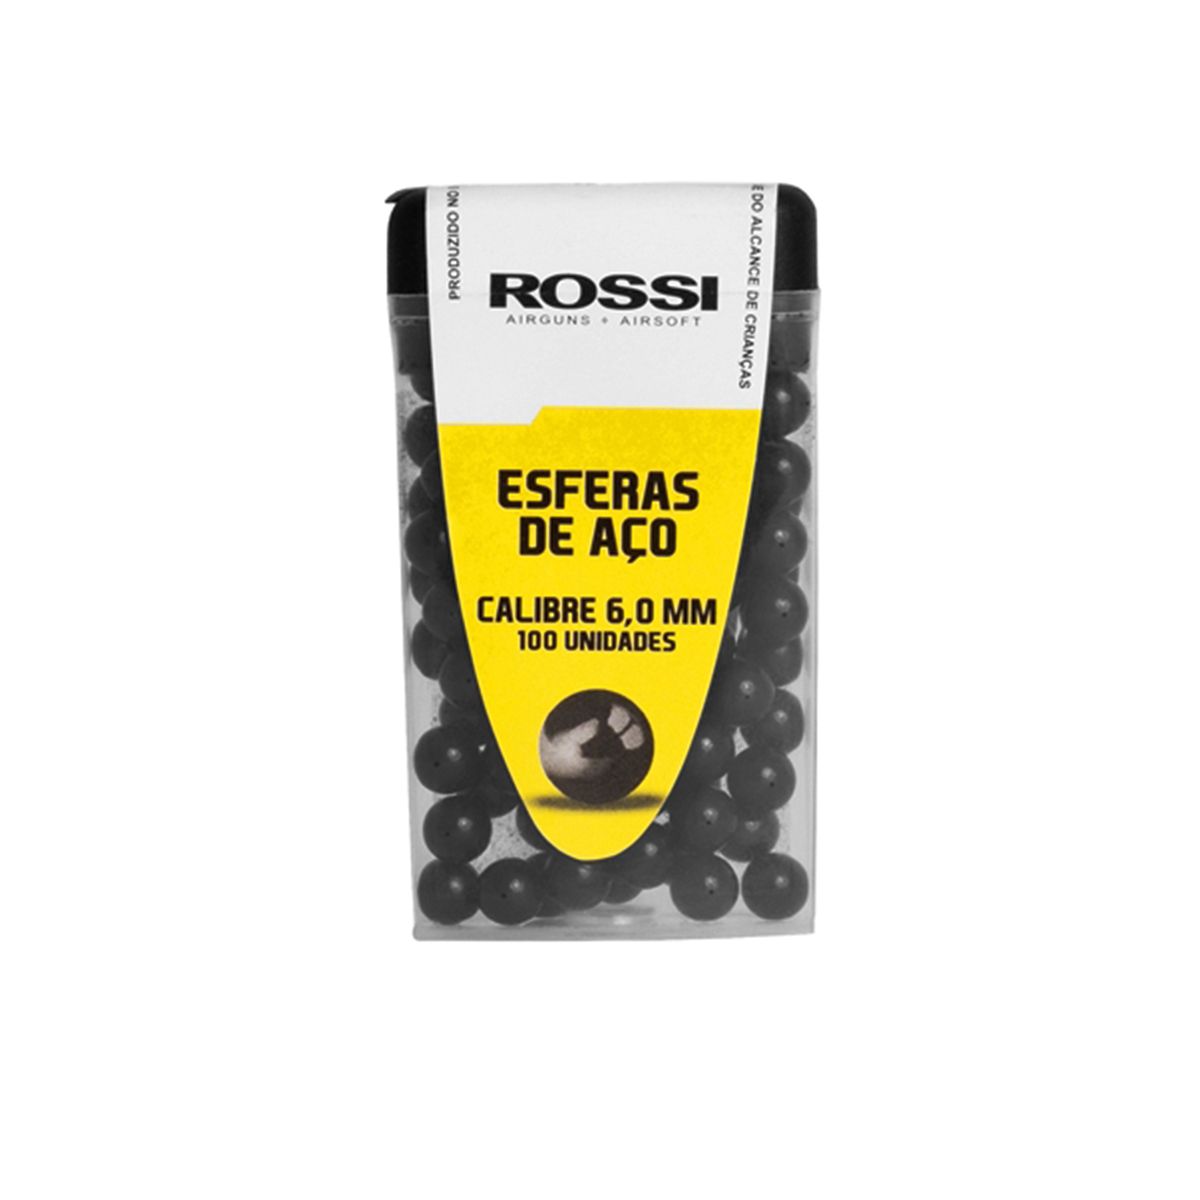 Esferas de Aço Rossi Black 6,0mm - 100 Unidades